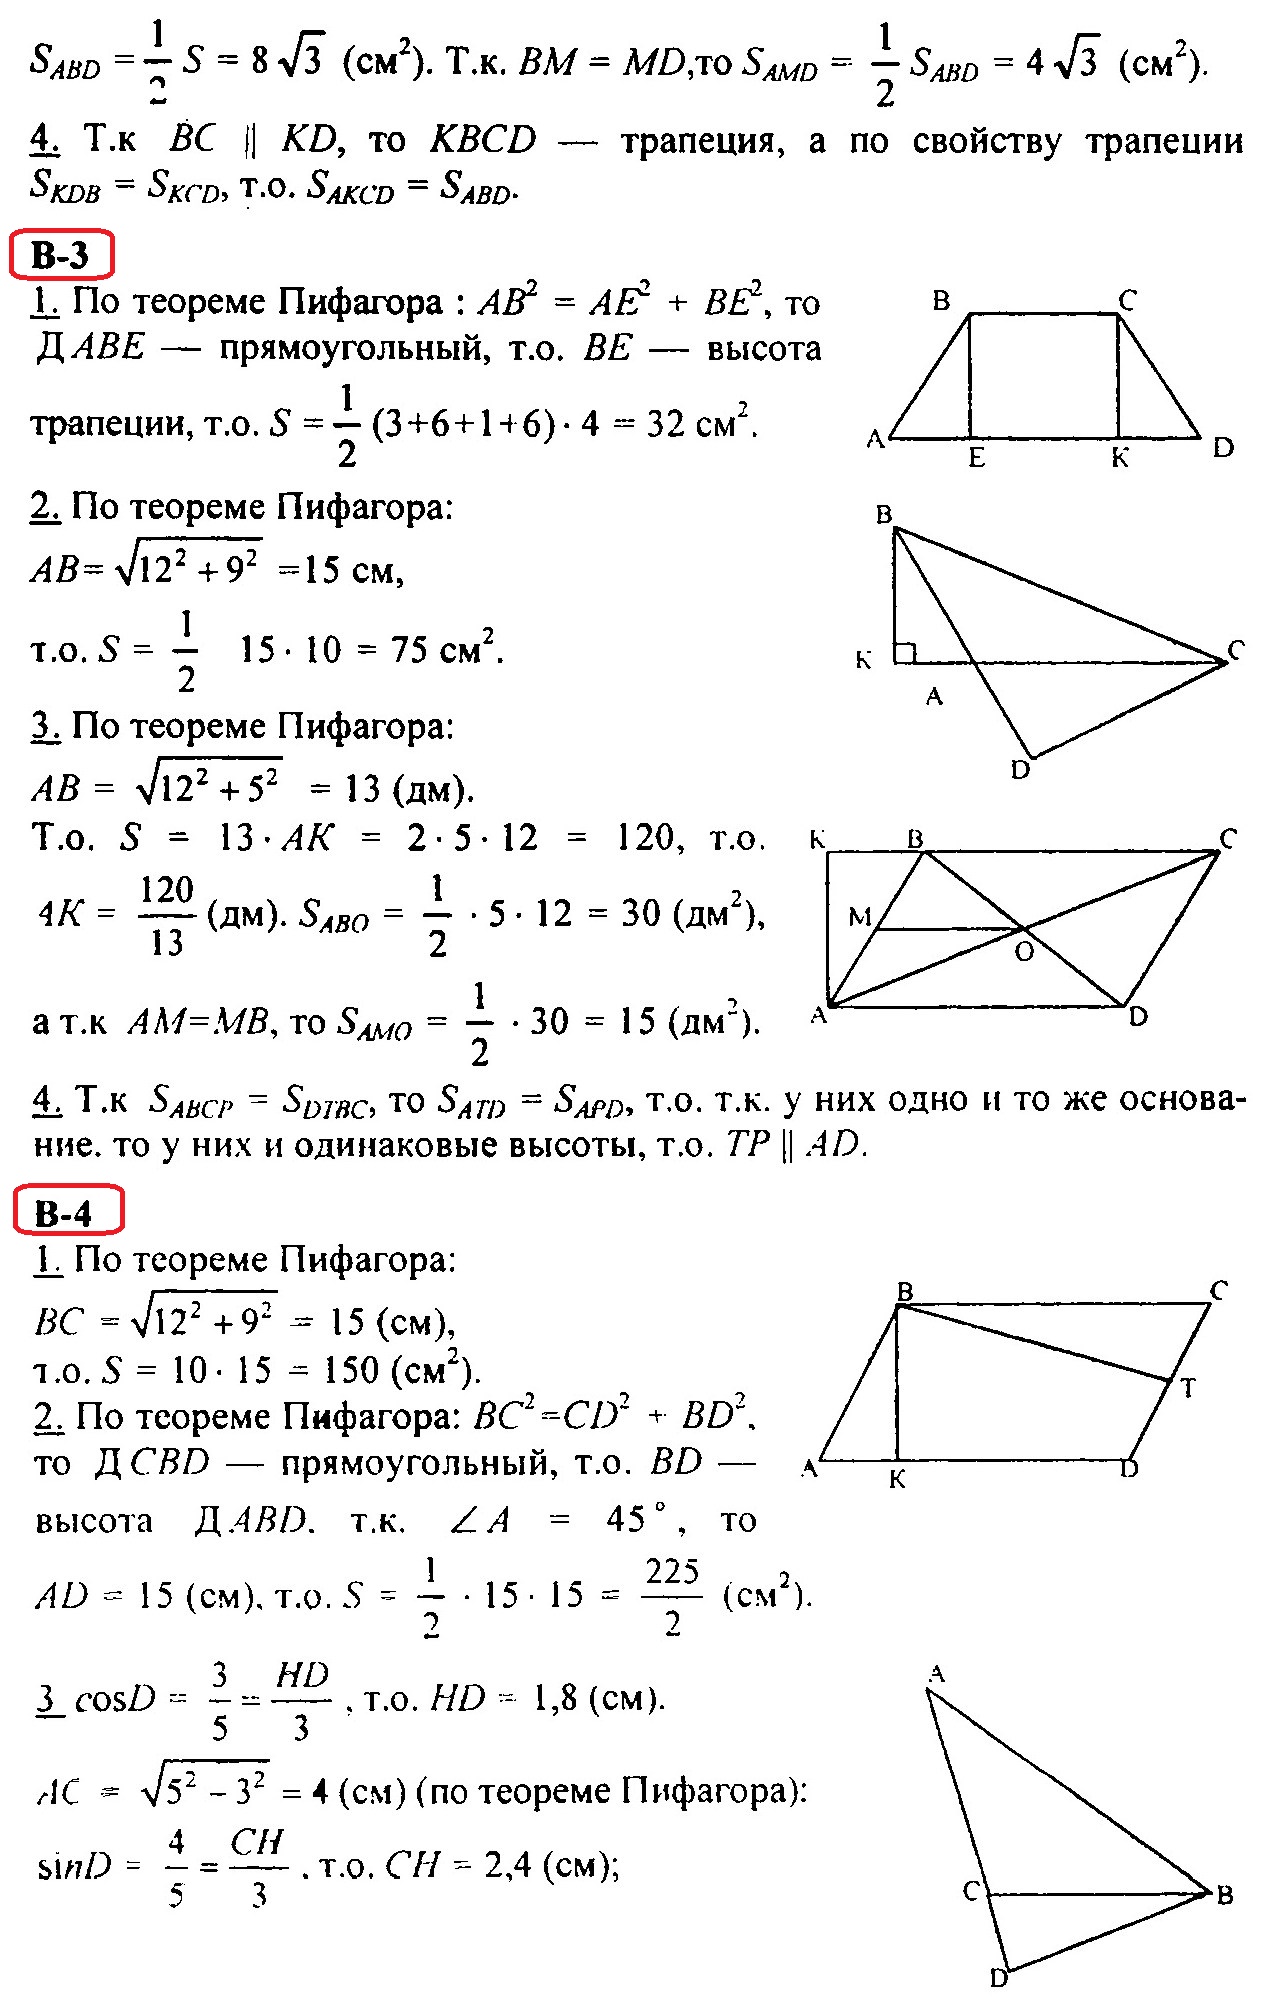 Контрольные работы по геометрии в 8 классе. Ответы и решения на КР-2